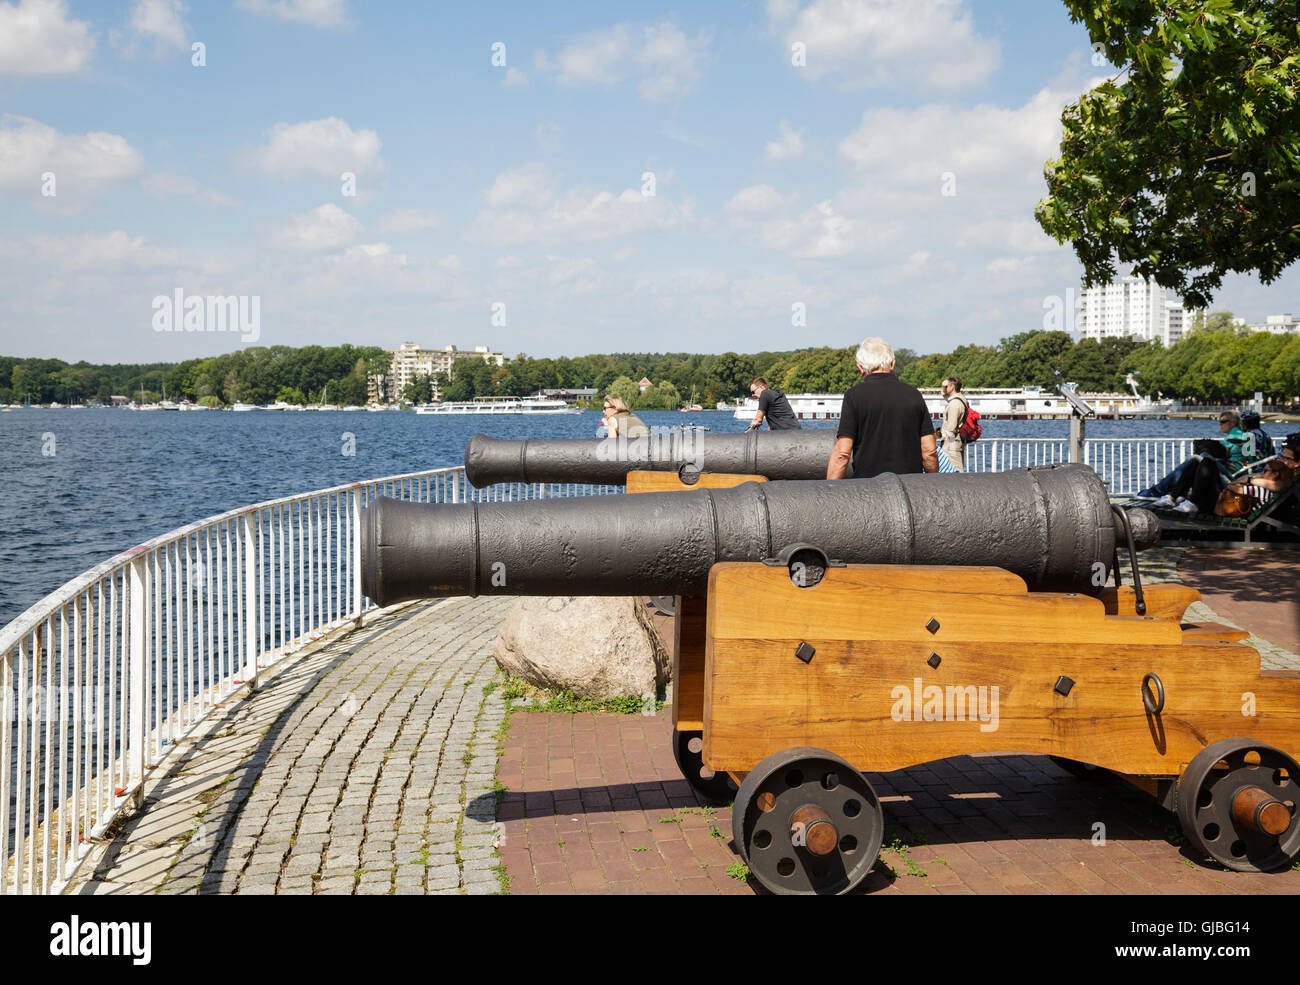 Greenwich-Promenade mit Kanonen, ein Geschenk zum Flughafen Tegel aus dem Londoner Stadtteil Greenwich, Tegel, Berlin, Deutschland Stockfoto